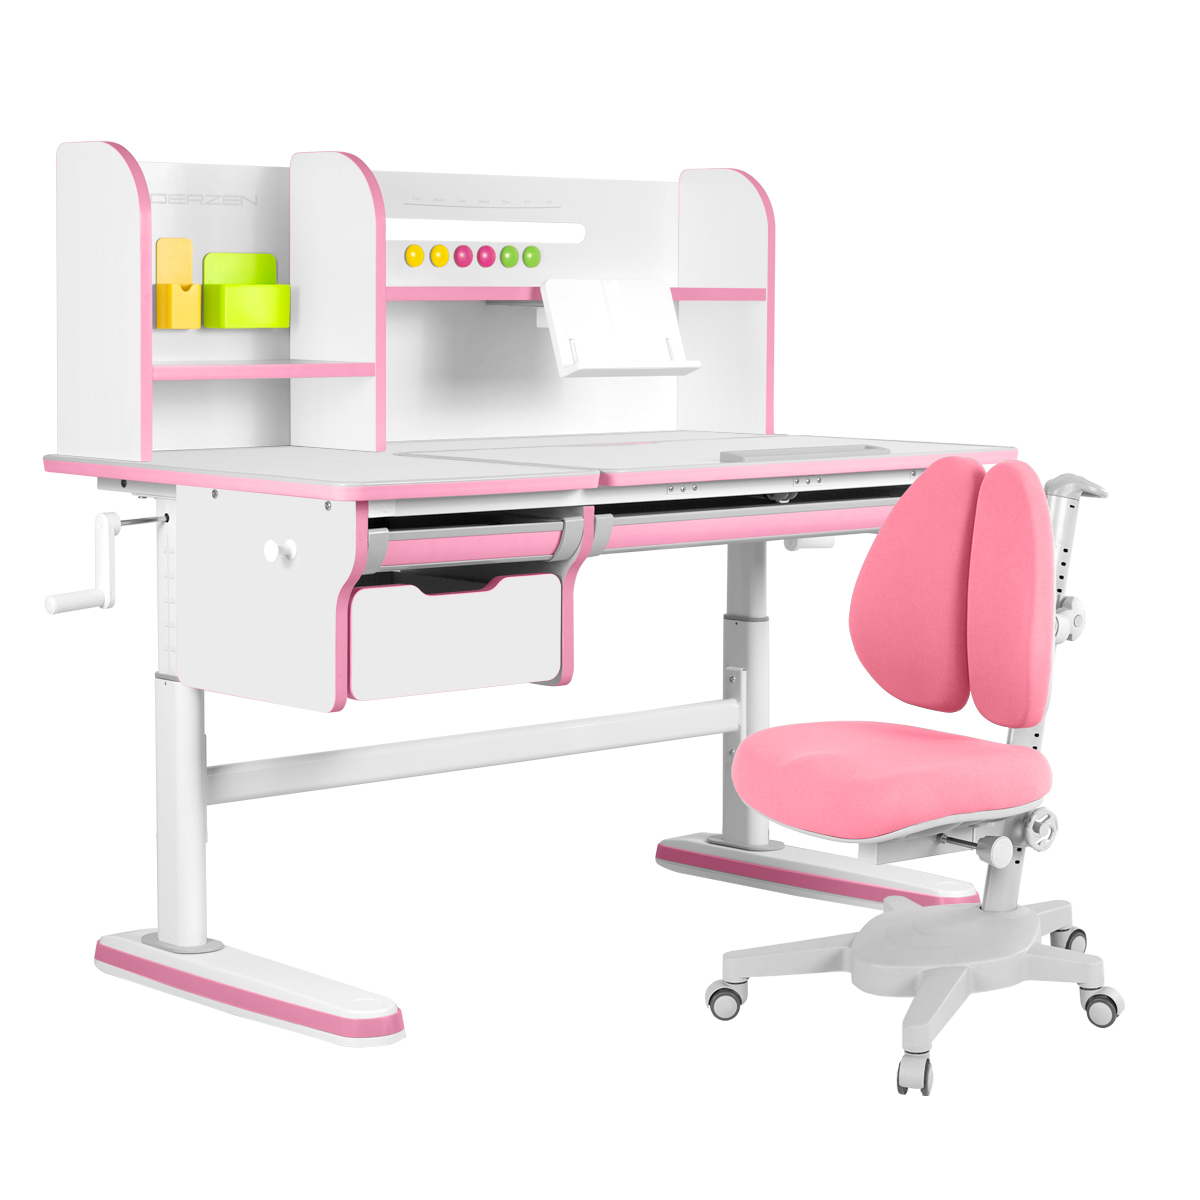 Комплект KinderZen Dali plus: парта + кресло белый/розовый с розовым креслом Aramata Duos